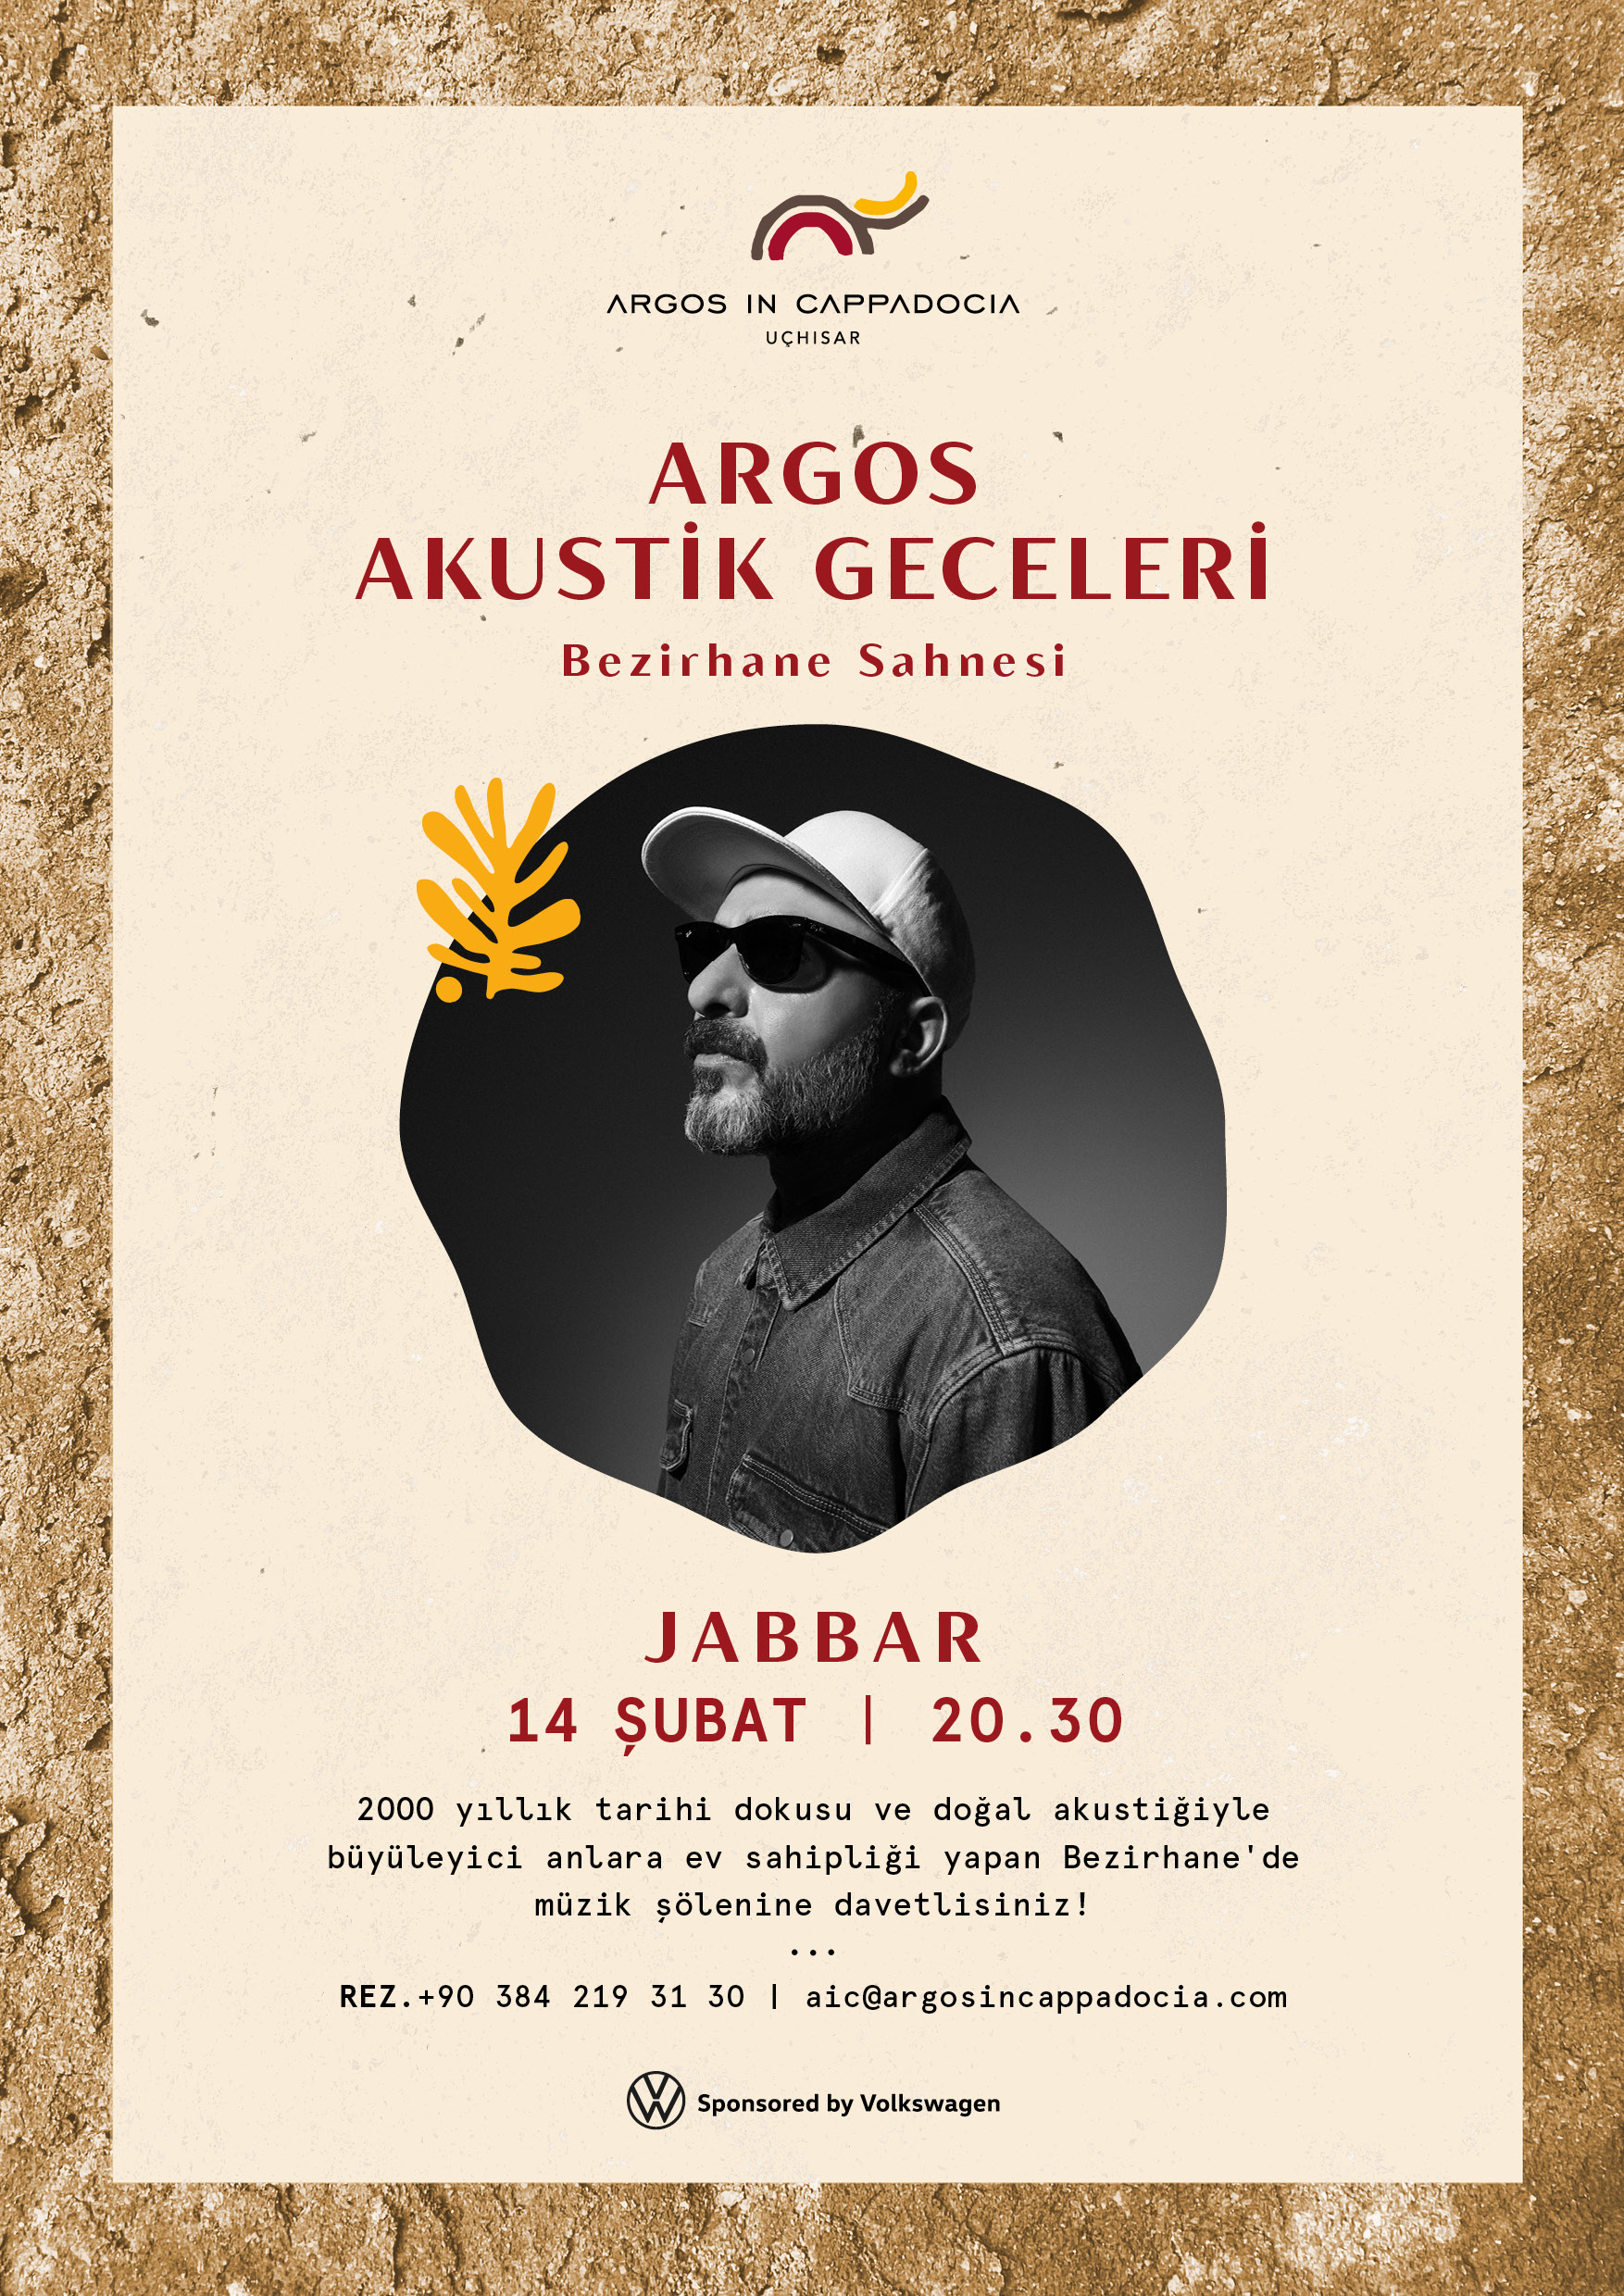 Argos in Cappadocia’nın Büyüleyici Kış Hikayesine Jabbar’ın Sevgililer Günü Şarkıları Eşlik Ediyor